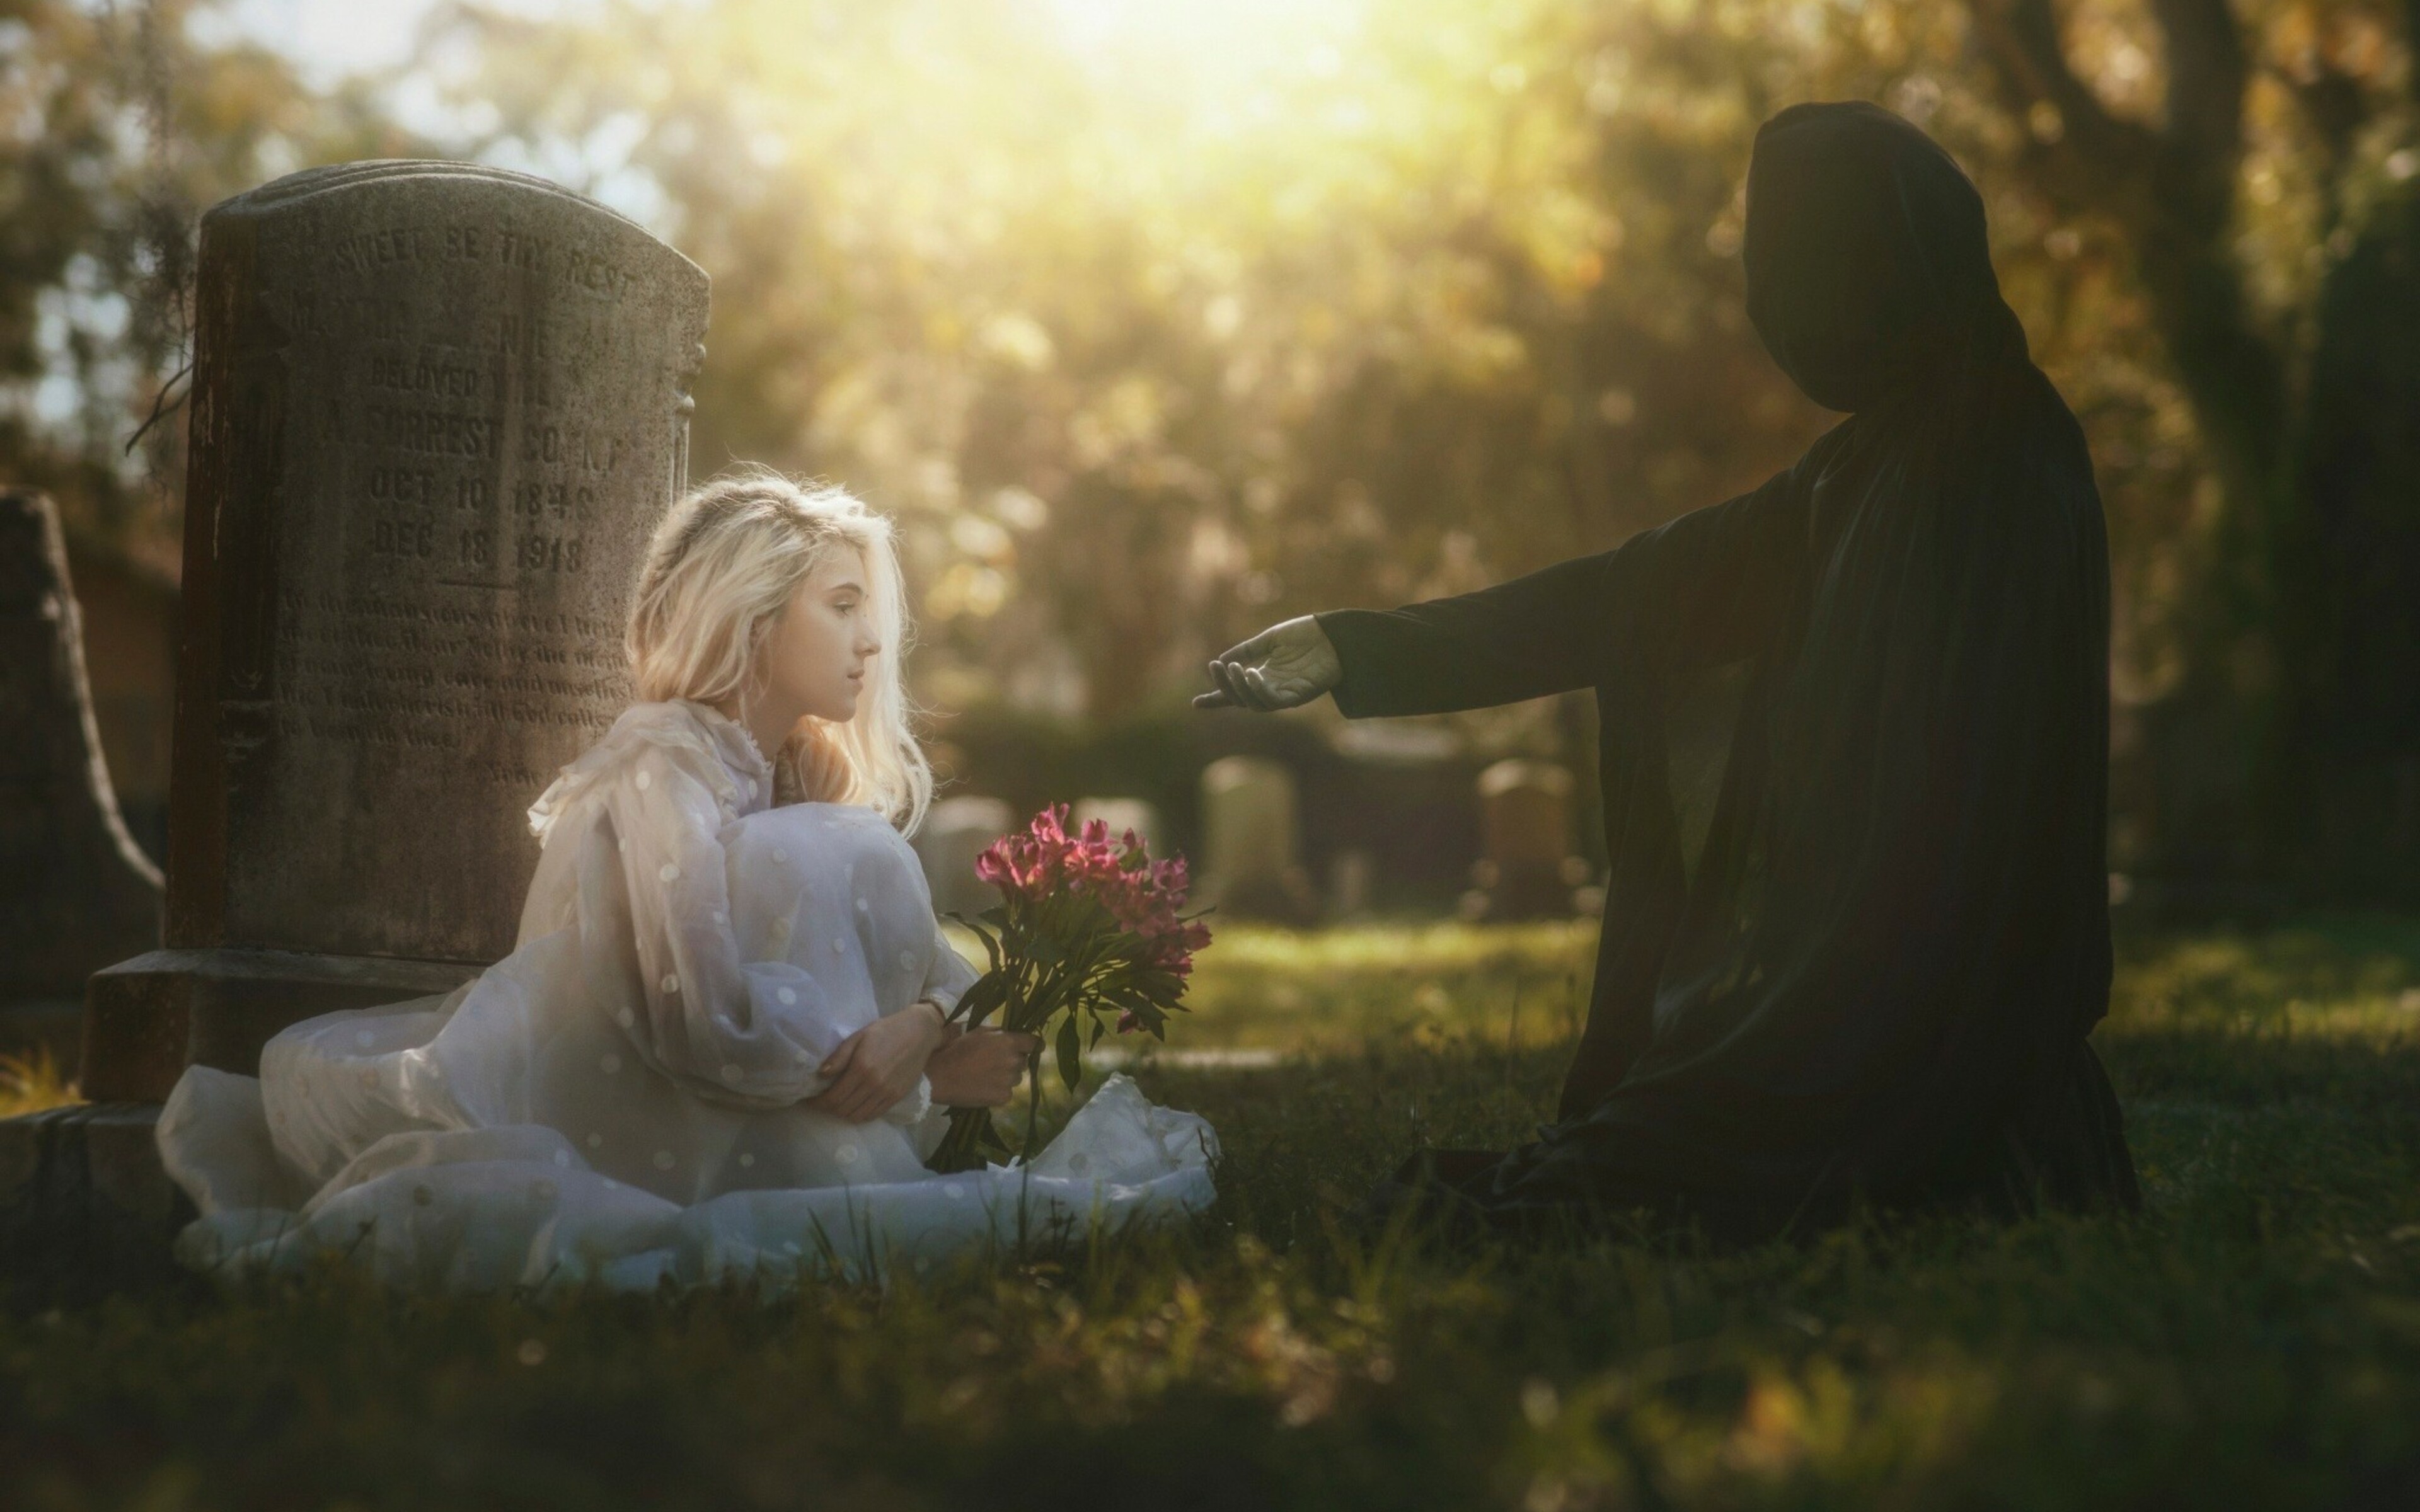 Песни душа обнимает купола. Фотосессия на кладбище. Мужчина с девочкой у могилы.